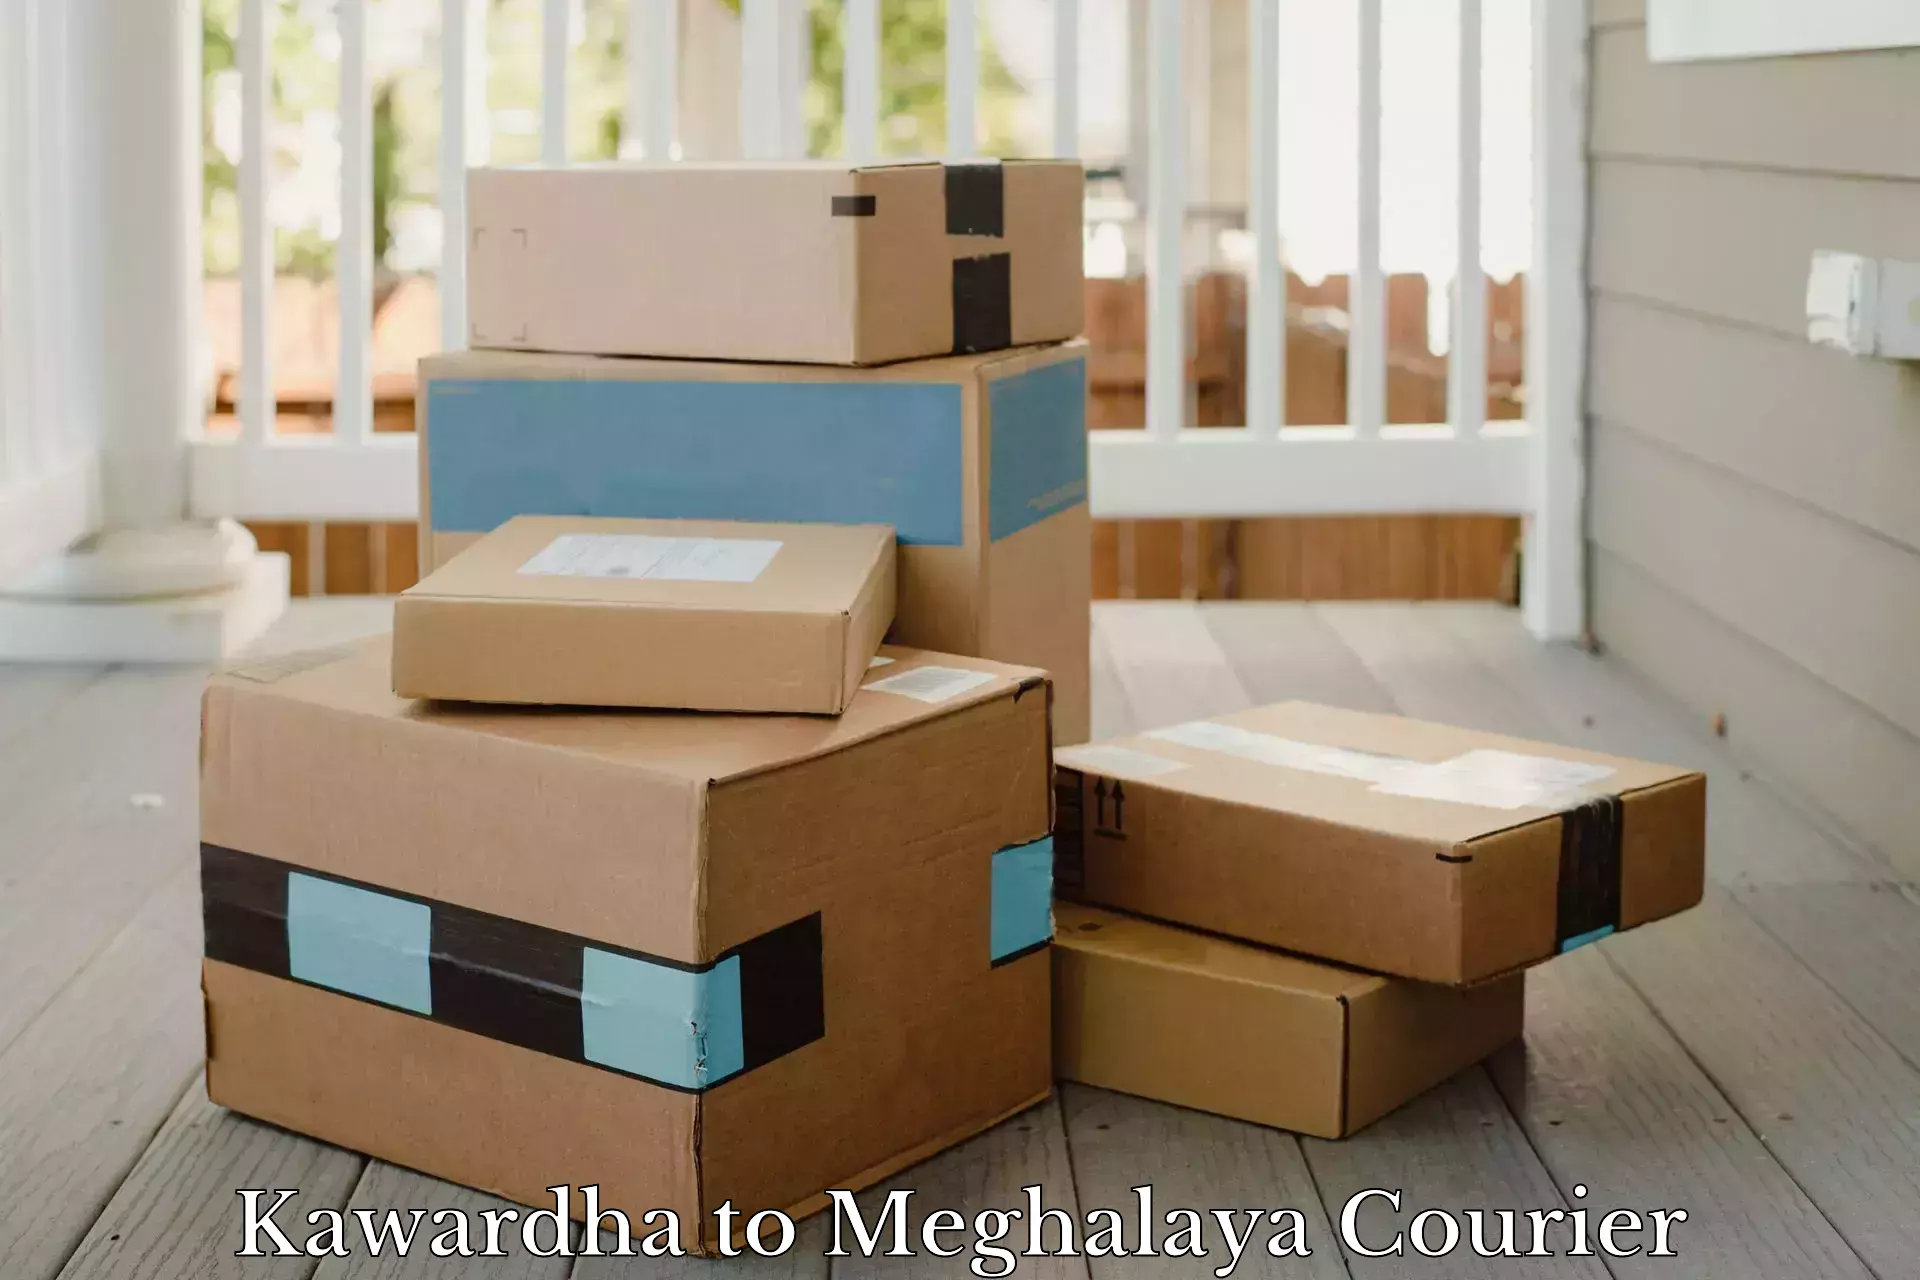 Cost-effective shipping solutions Kawardha to Shillong